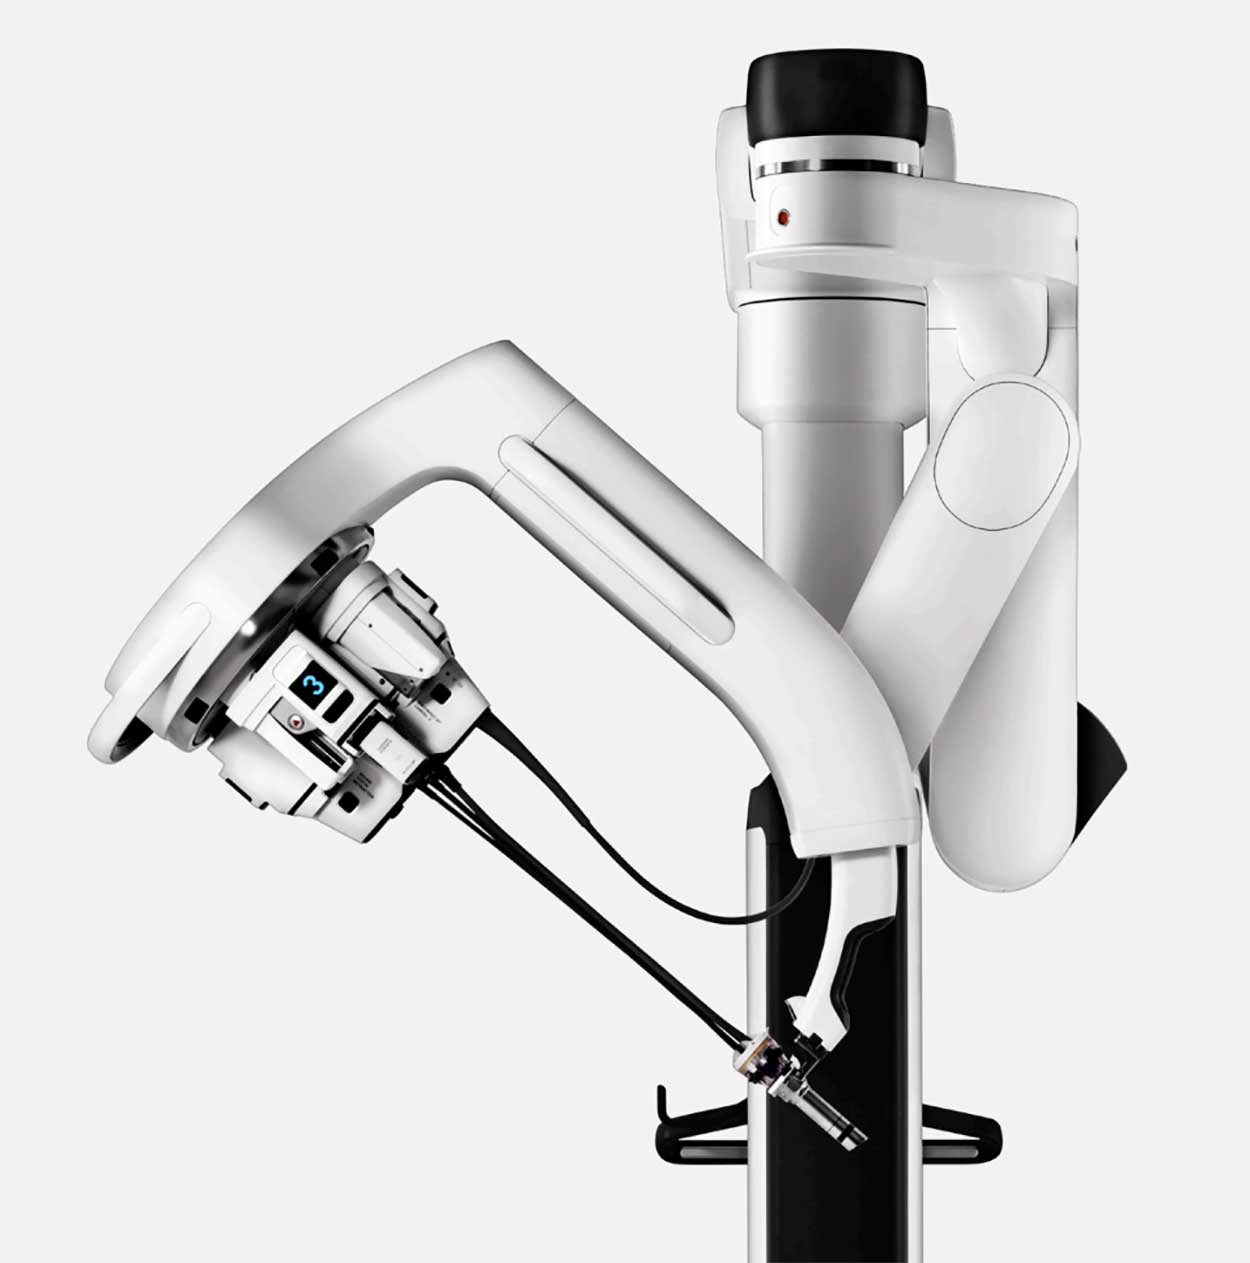 New Da Vinci Robot Allows Incision-Less Surgical Procedures